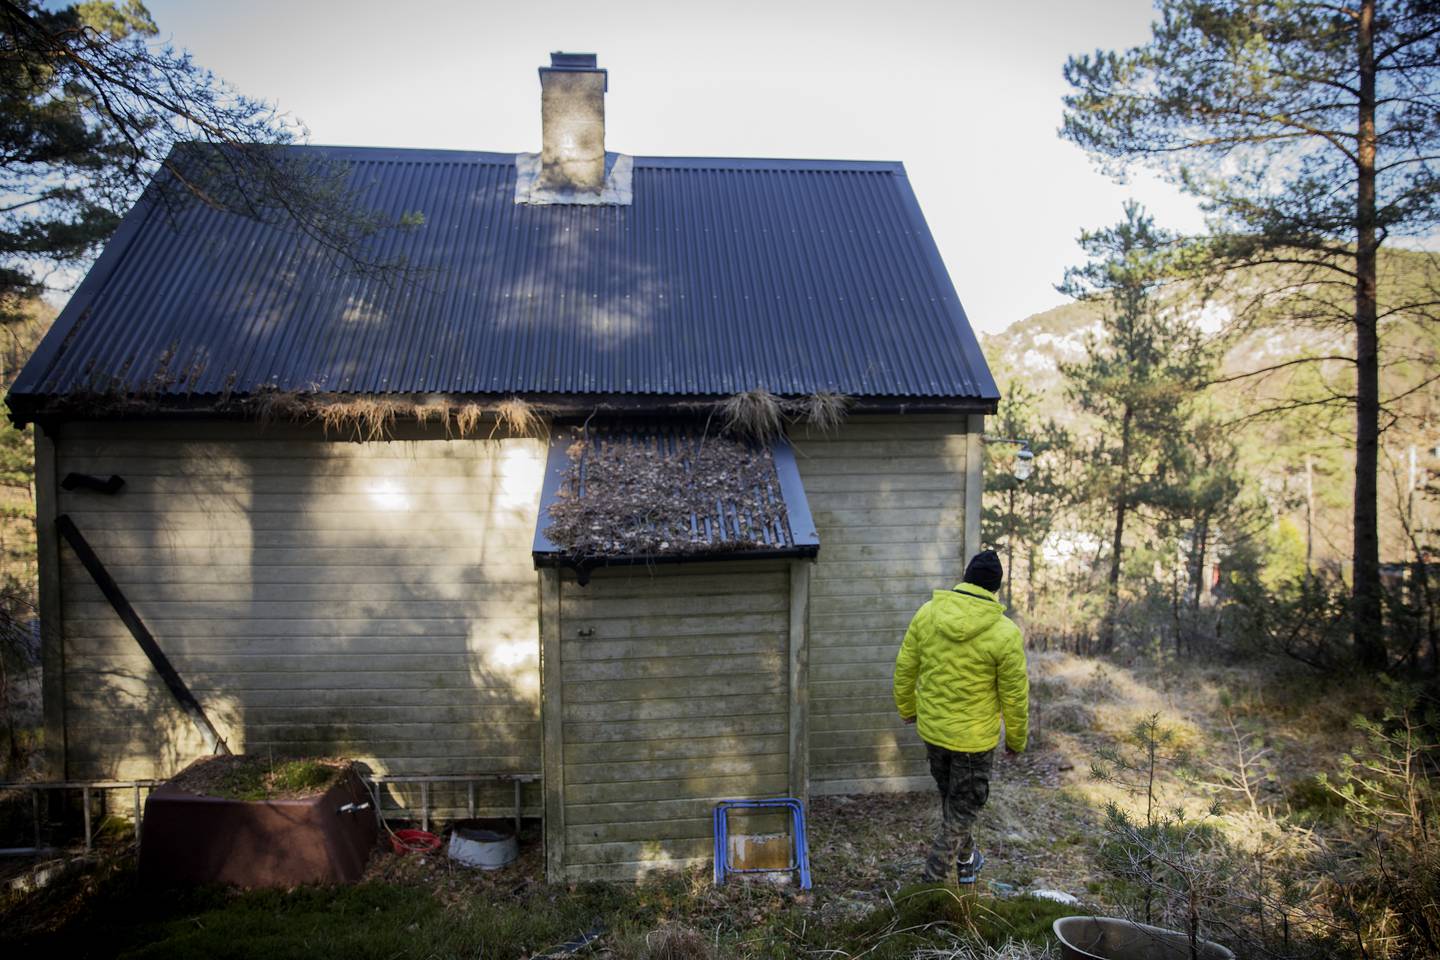 Herman er tilbake på Lauvås der han ble hentet av politet fire uker gammel. Hytta han bodde i er brent, men hytta nedenfor står fremdeles.